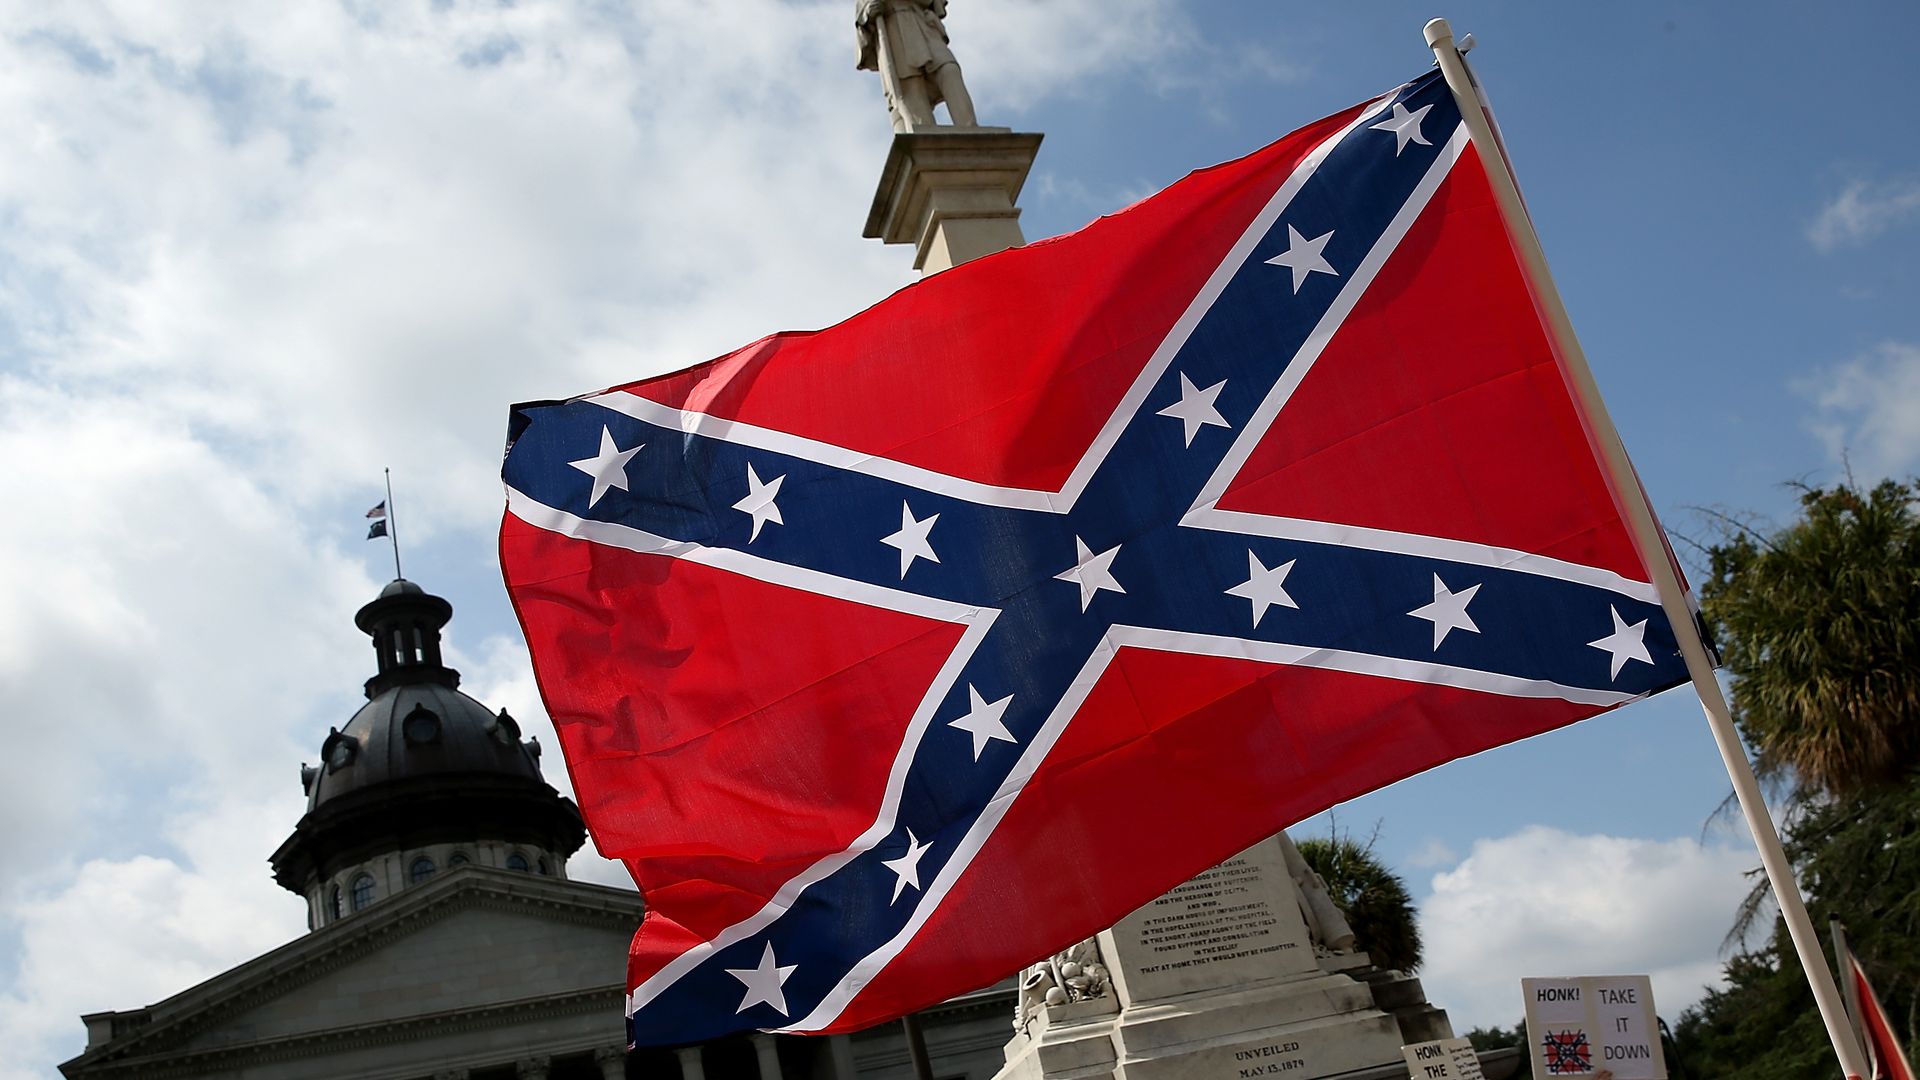 Confederate flag.